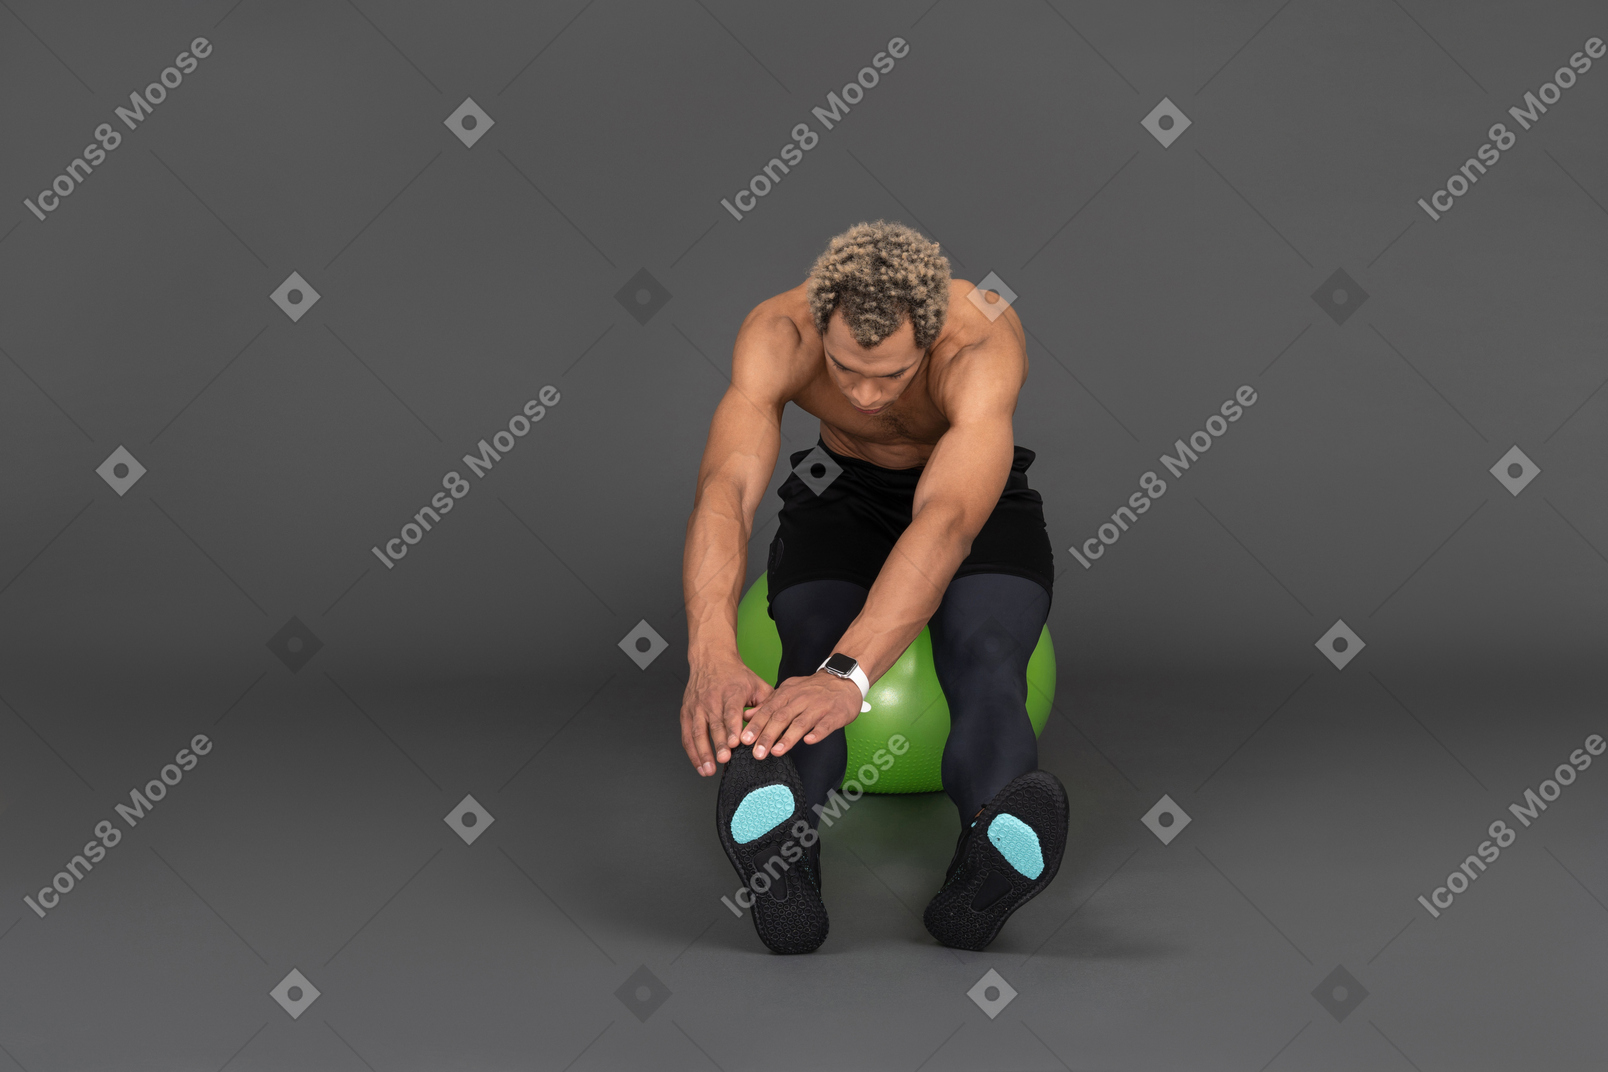 Vista frontal de un hombre afro sin camisa que se extiende mientras está sentado en una pelota de gimnasia verde